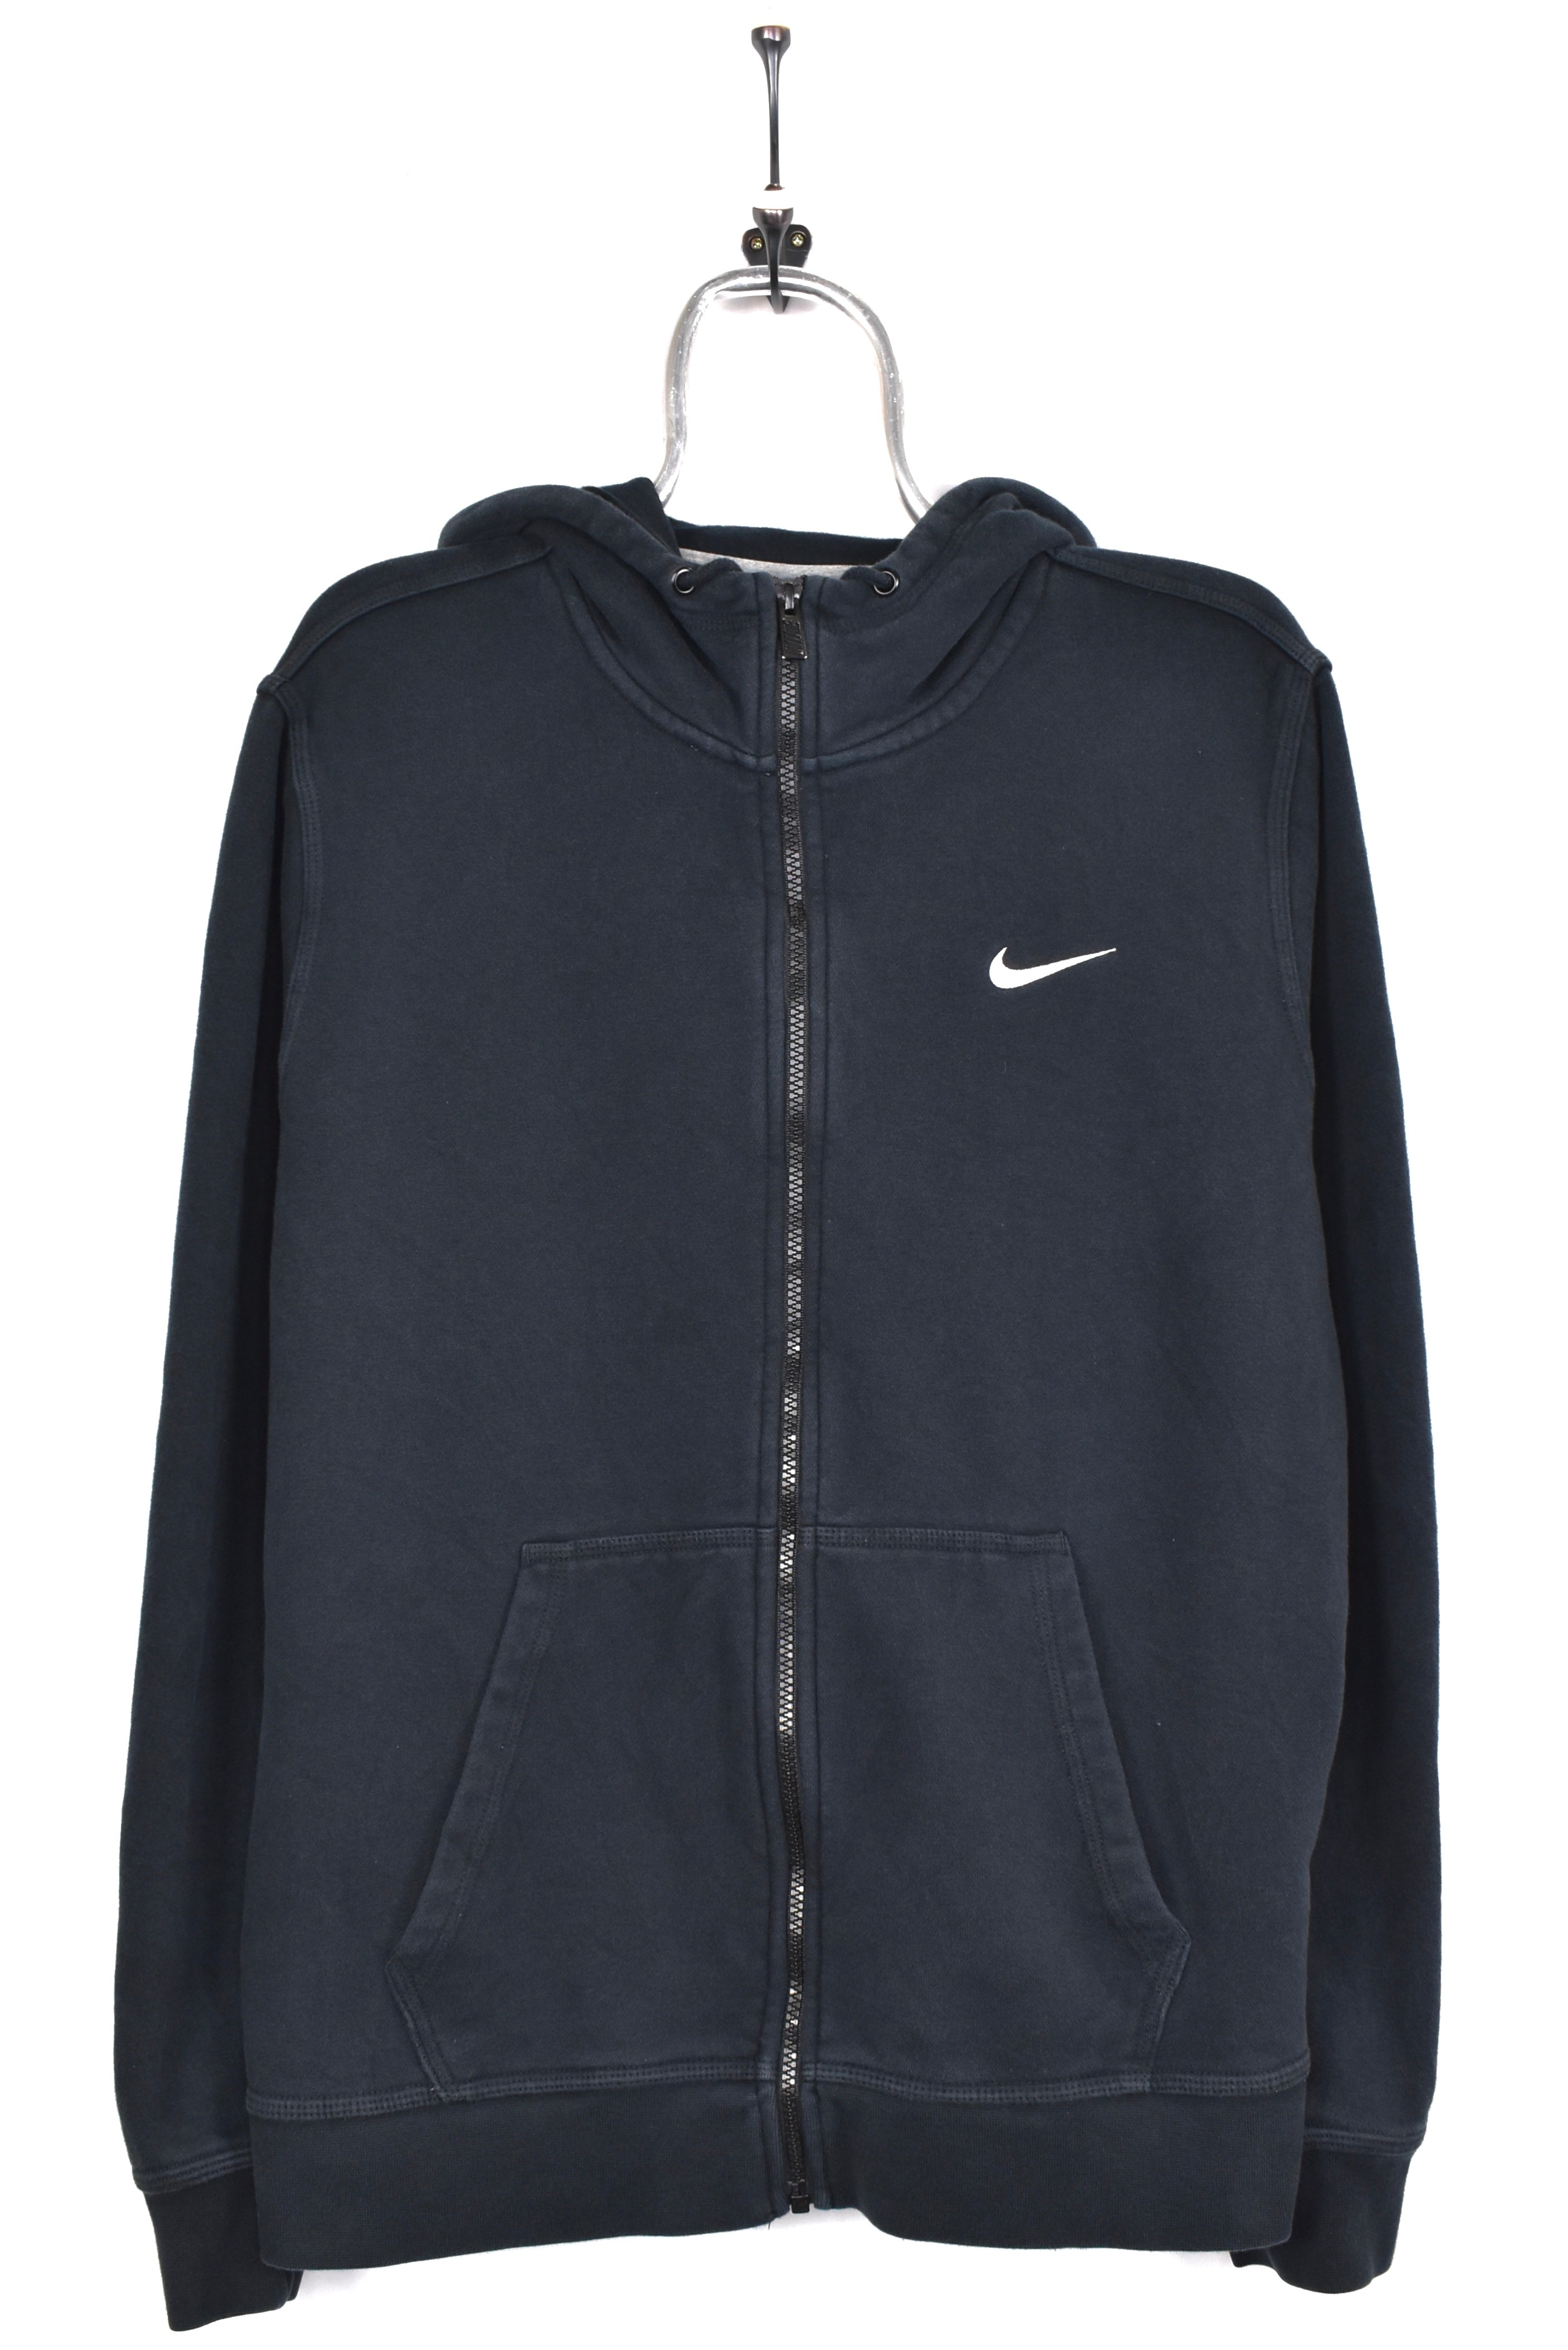 Vintage Nike hoodie, black embroidered sweatshirt - AU Large NIKE